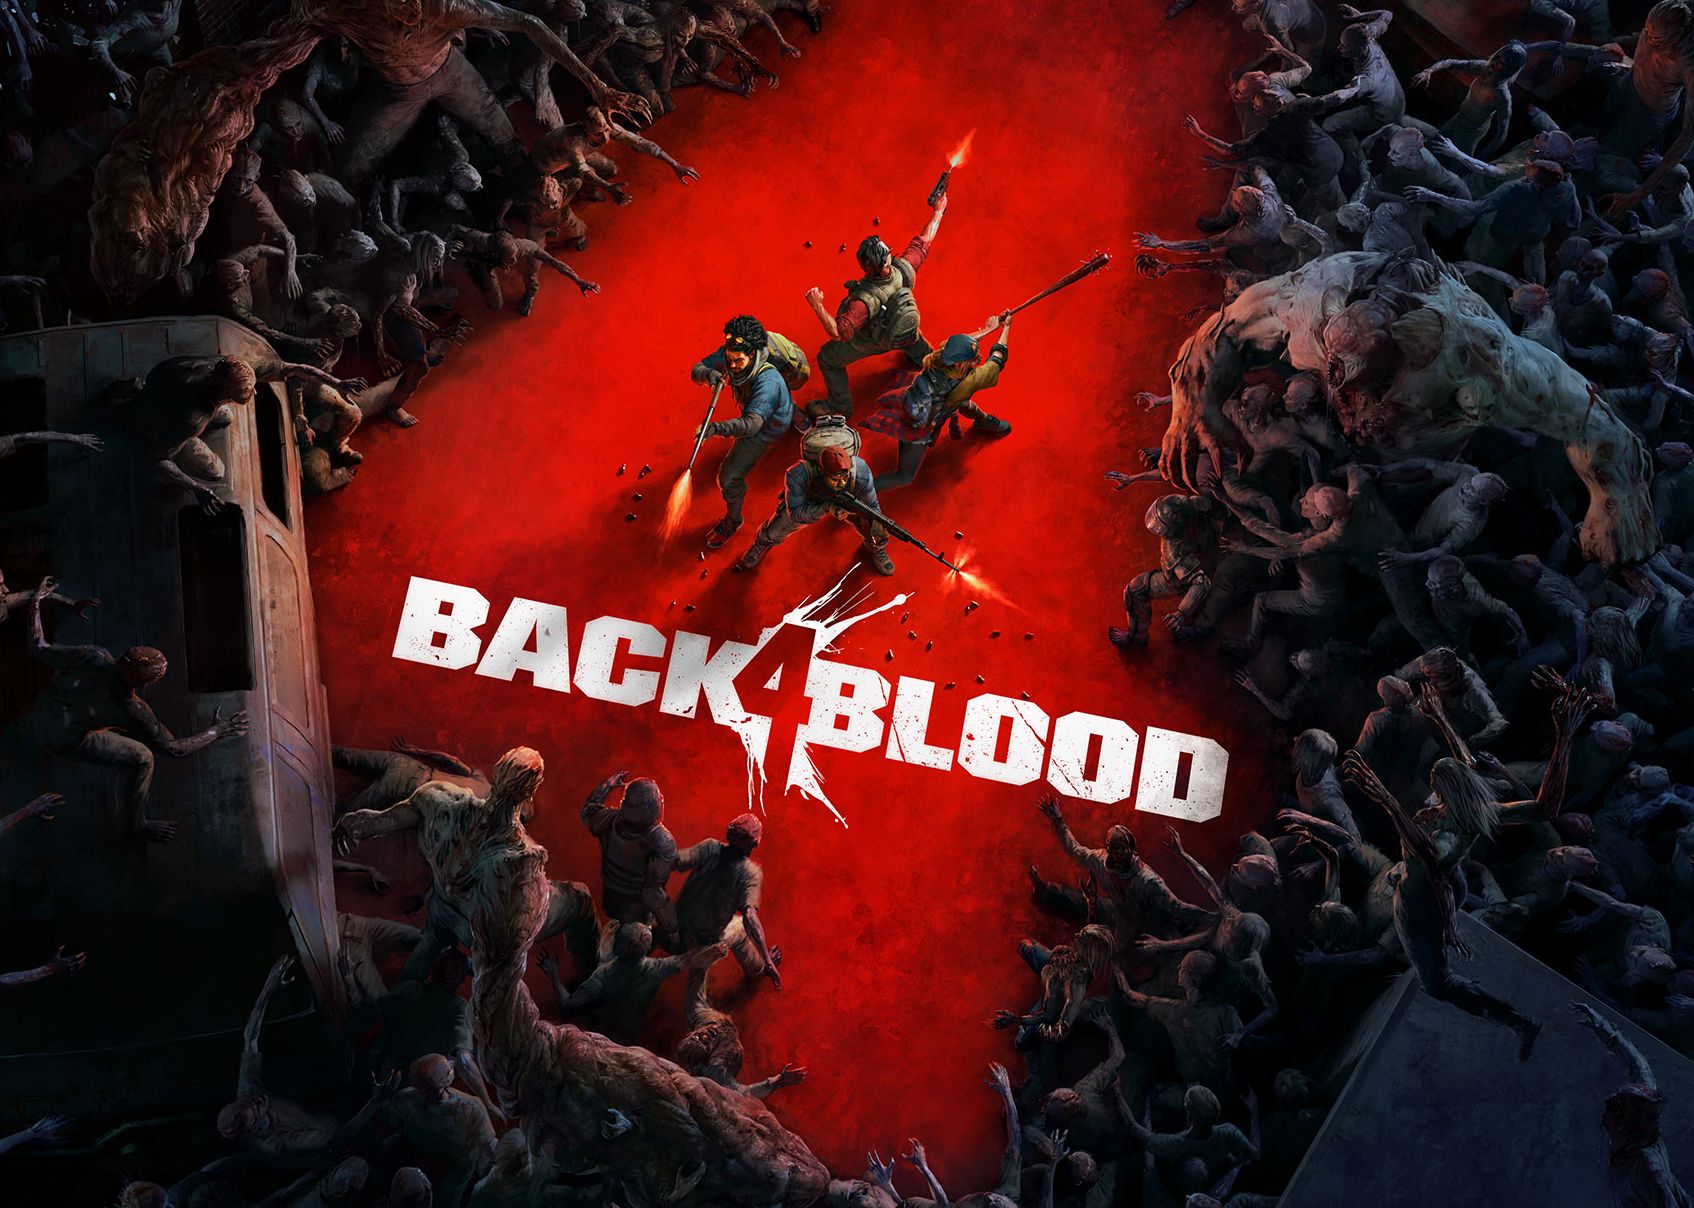 Image for Back 4 Blood in development at Left 4 Dead studio Turtle Rock